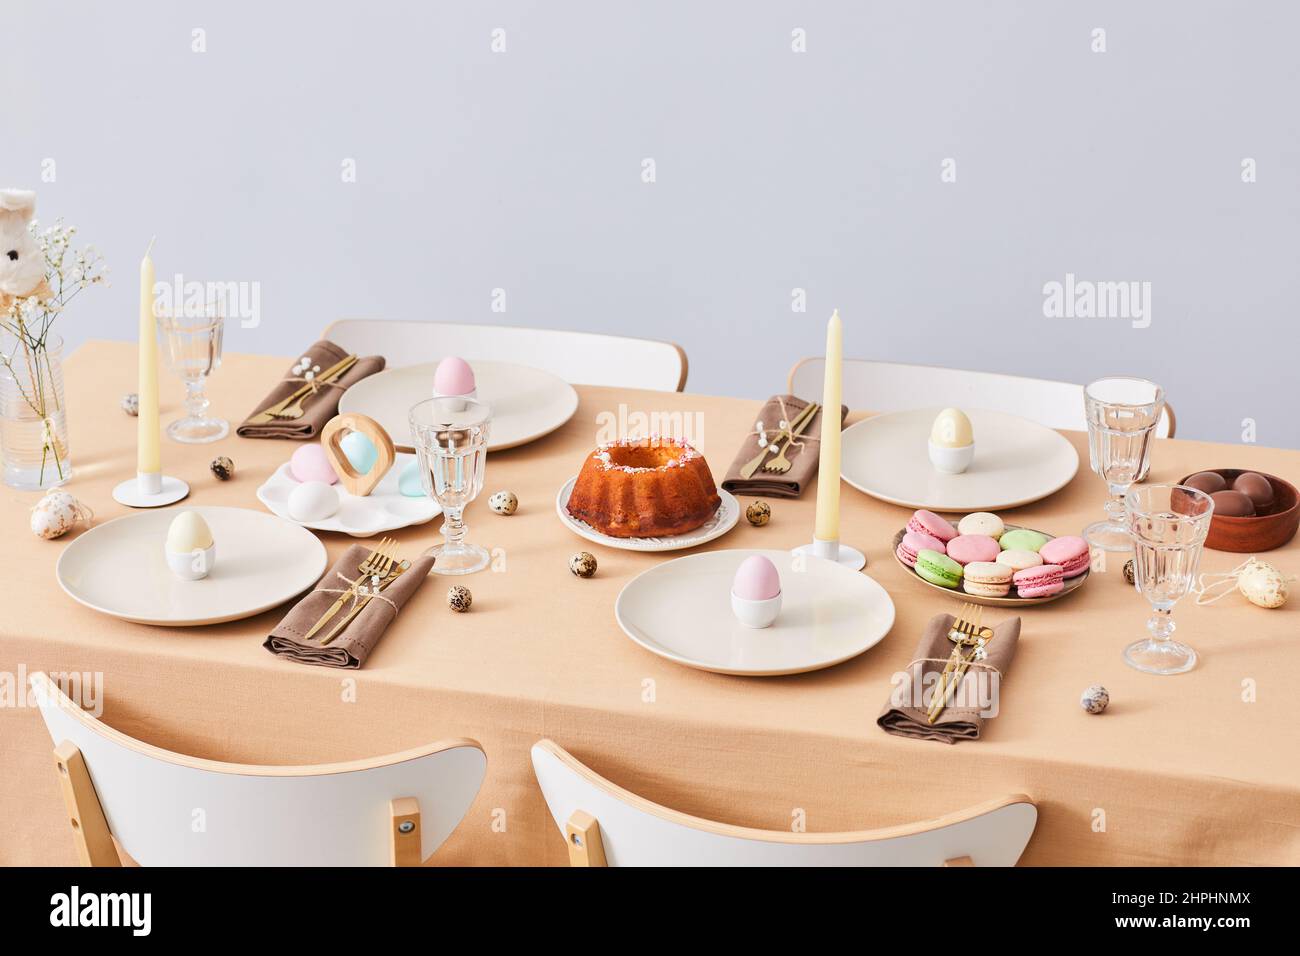 Imagen de fondo mínima de una elegante mesa de cena decorada para Semana Santa y Primavera, espacio para copiar Foto de stock